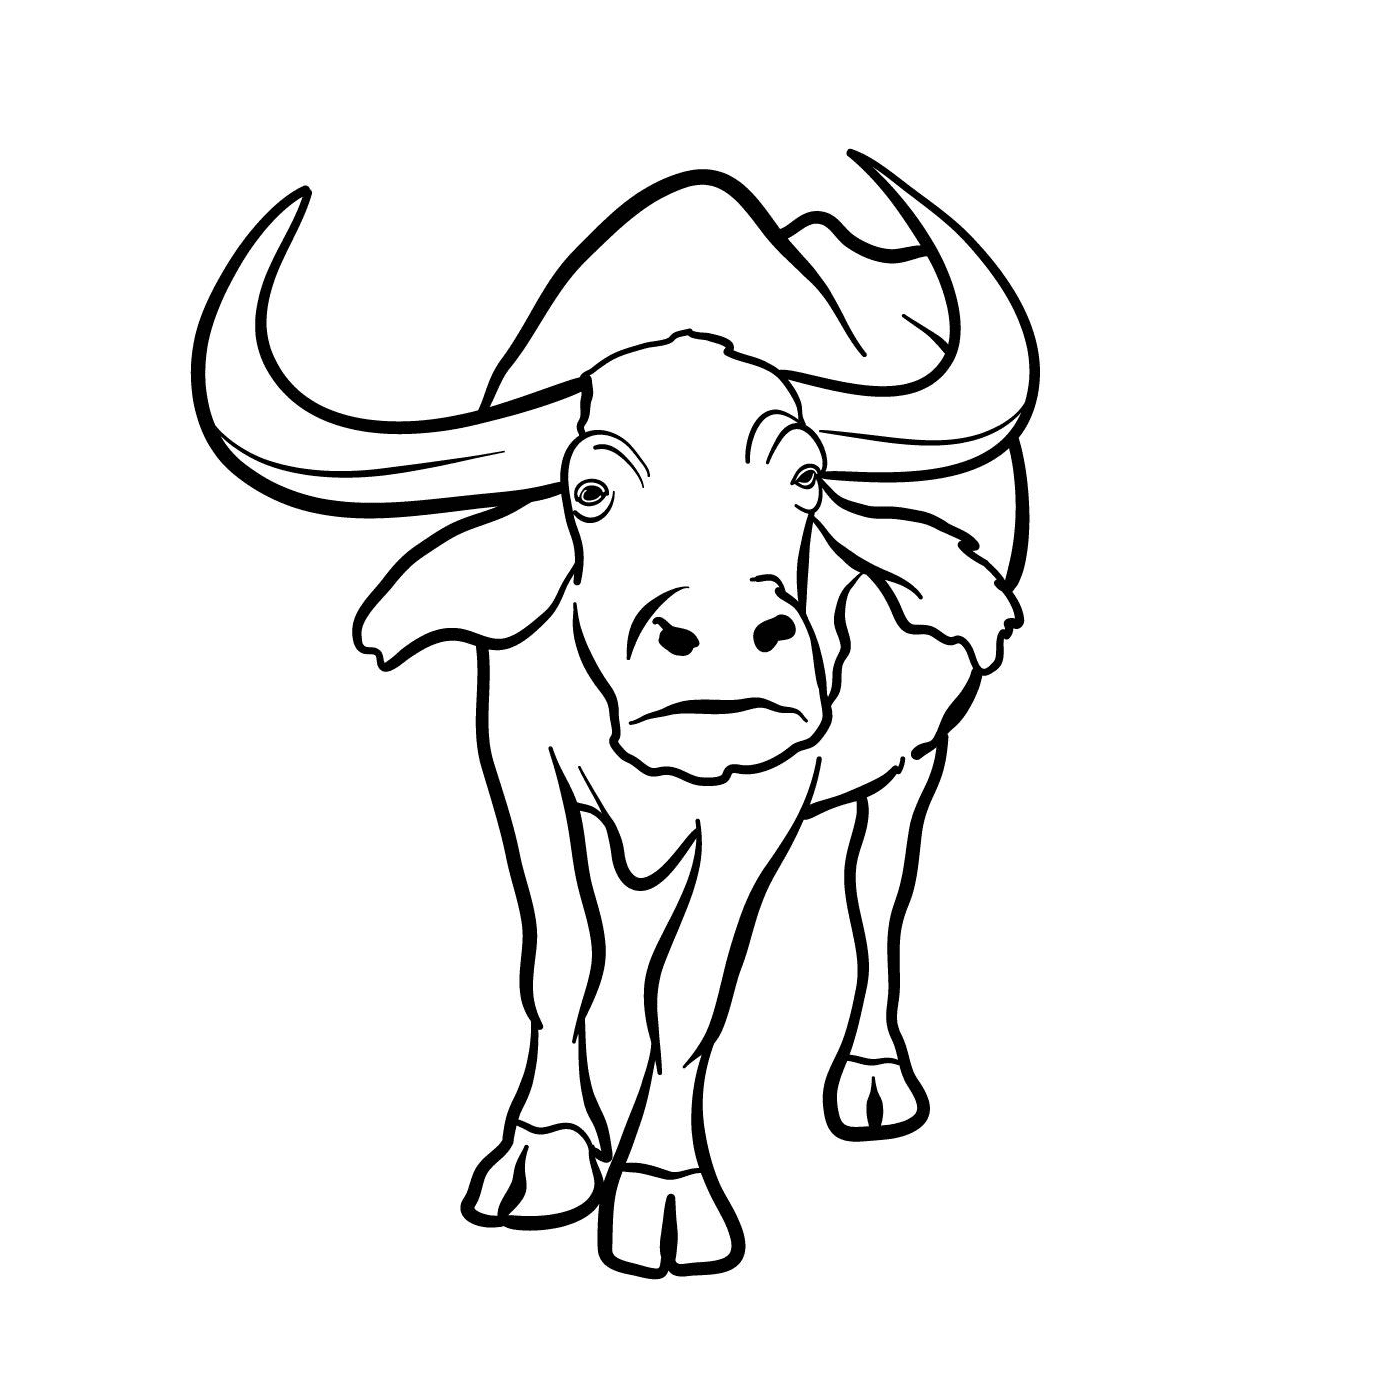  A bull with horns 